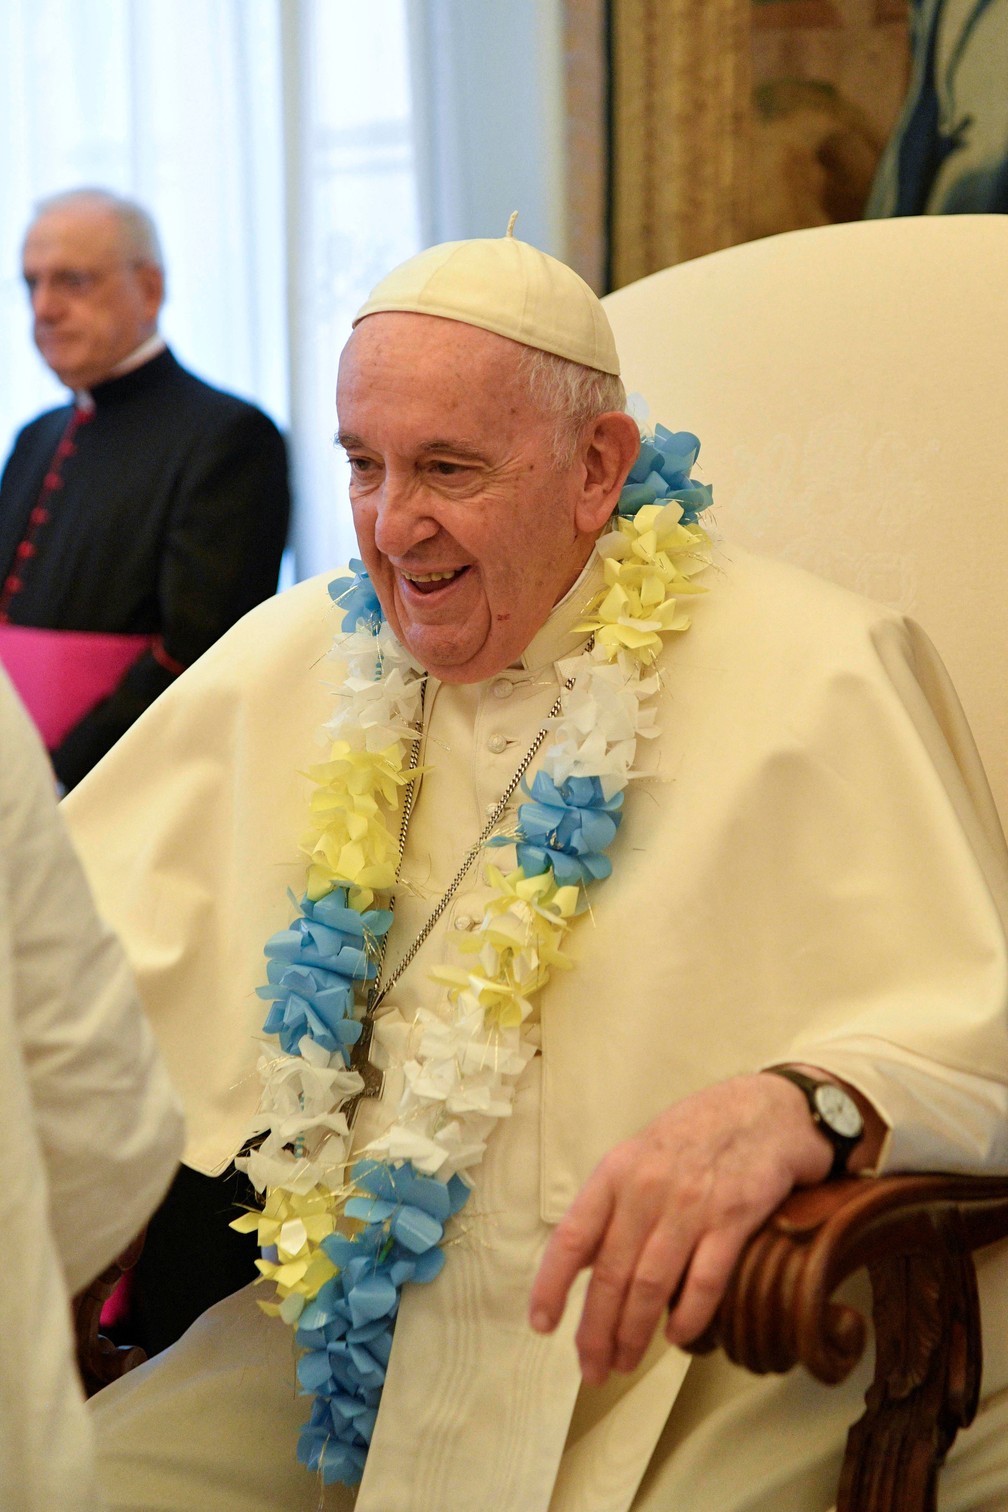 Papa Francisco completa 83 anos neste dia 17 de dezembro. Parabéns